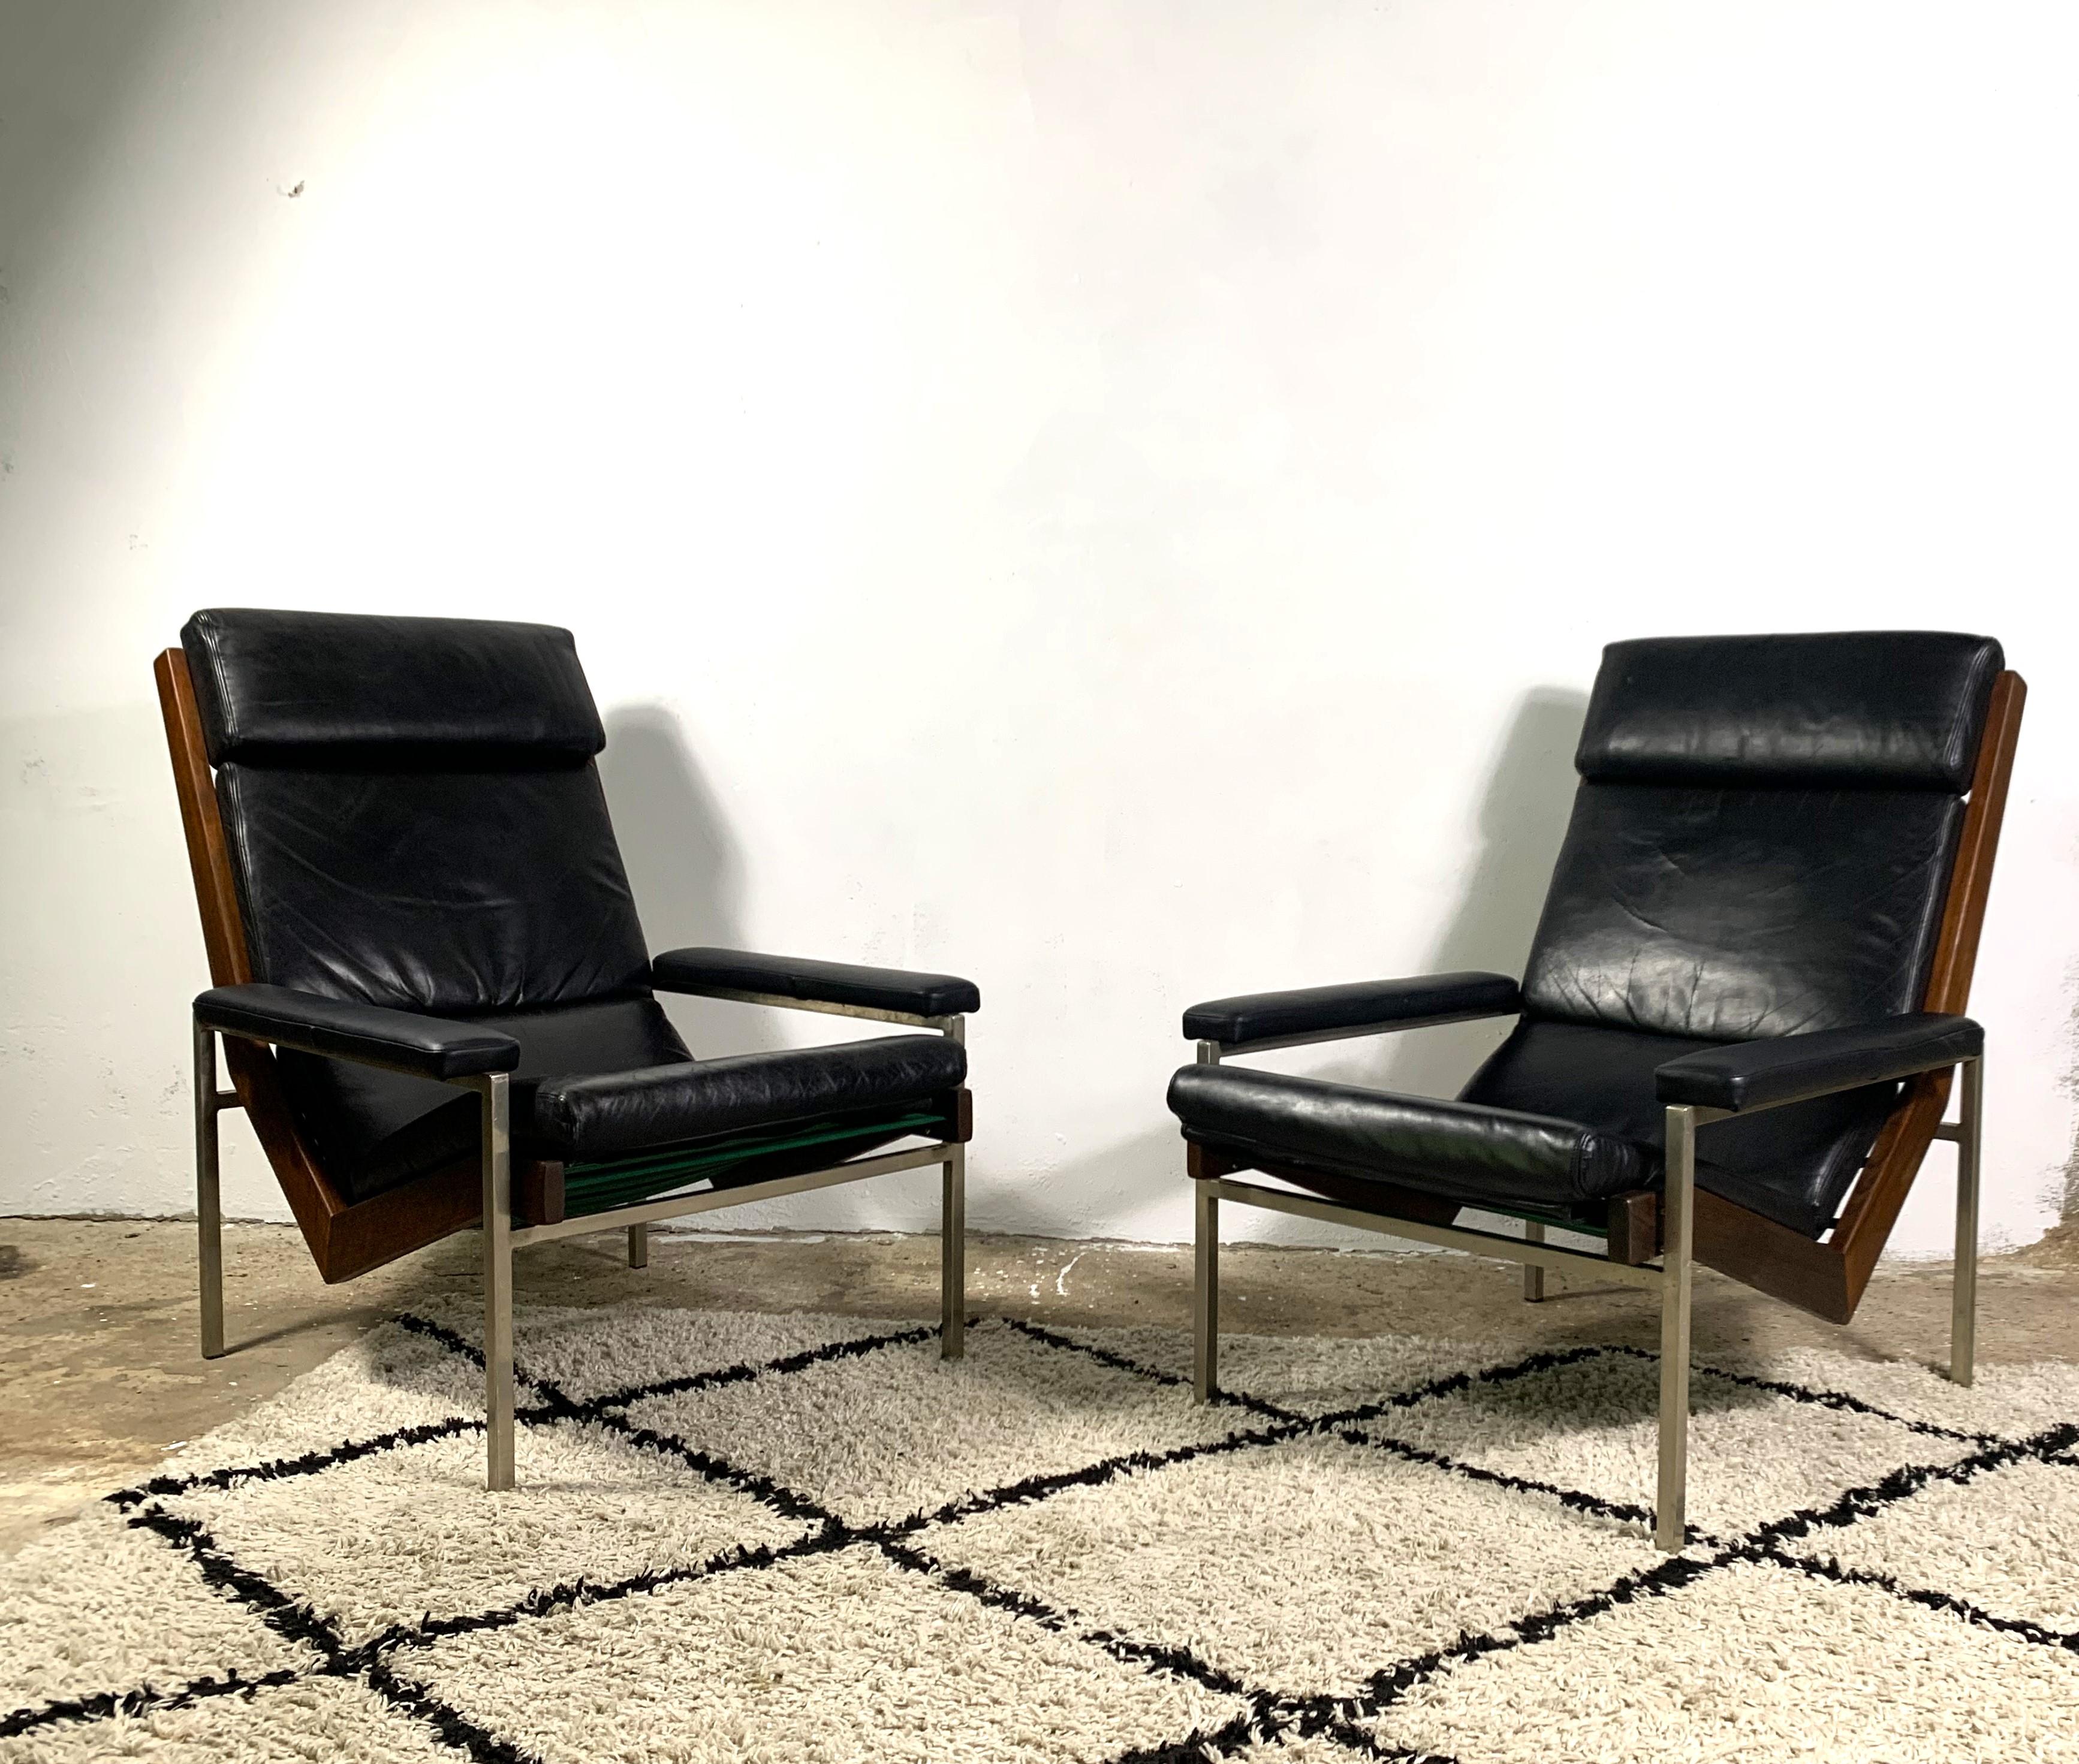 Lotus-Sessel, entworfen von Rob Parry für Gelderland. Die Metallkonstruktion und der einzigartige Palisanderholzrahmen ergeben ein harmonisches Bild mit dem ergonomischen schwarzen Ledersitz. Ikonisches Design von einem der besten niederländischen